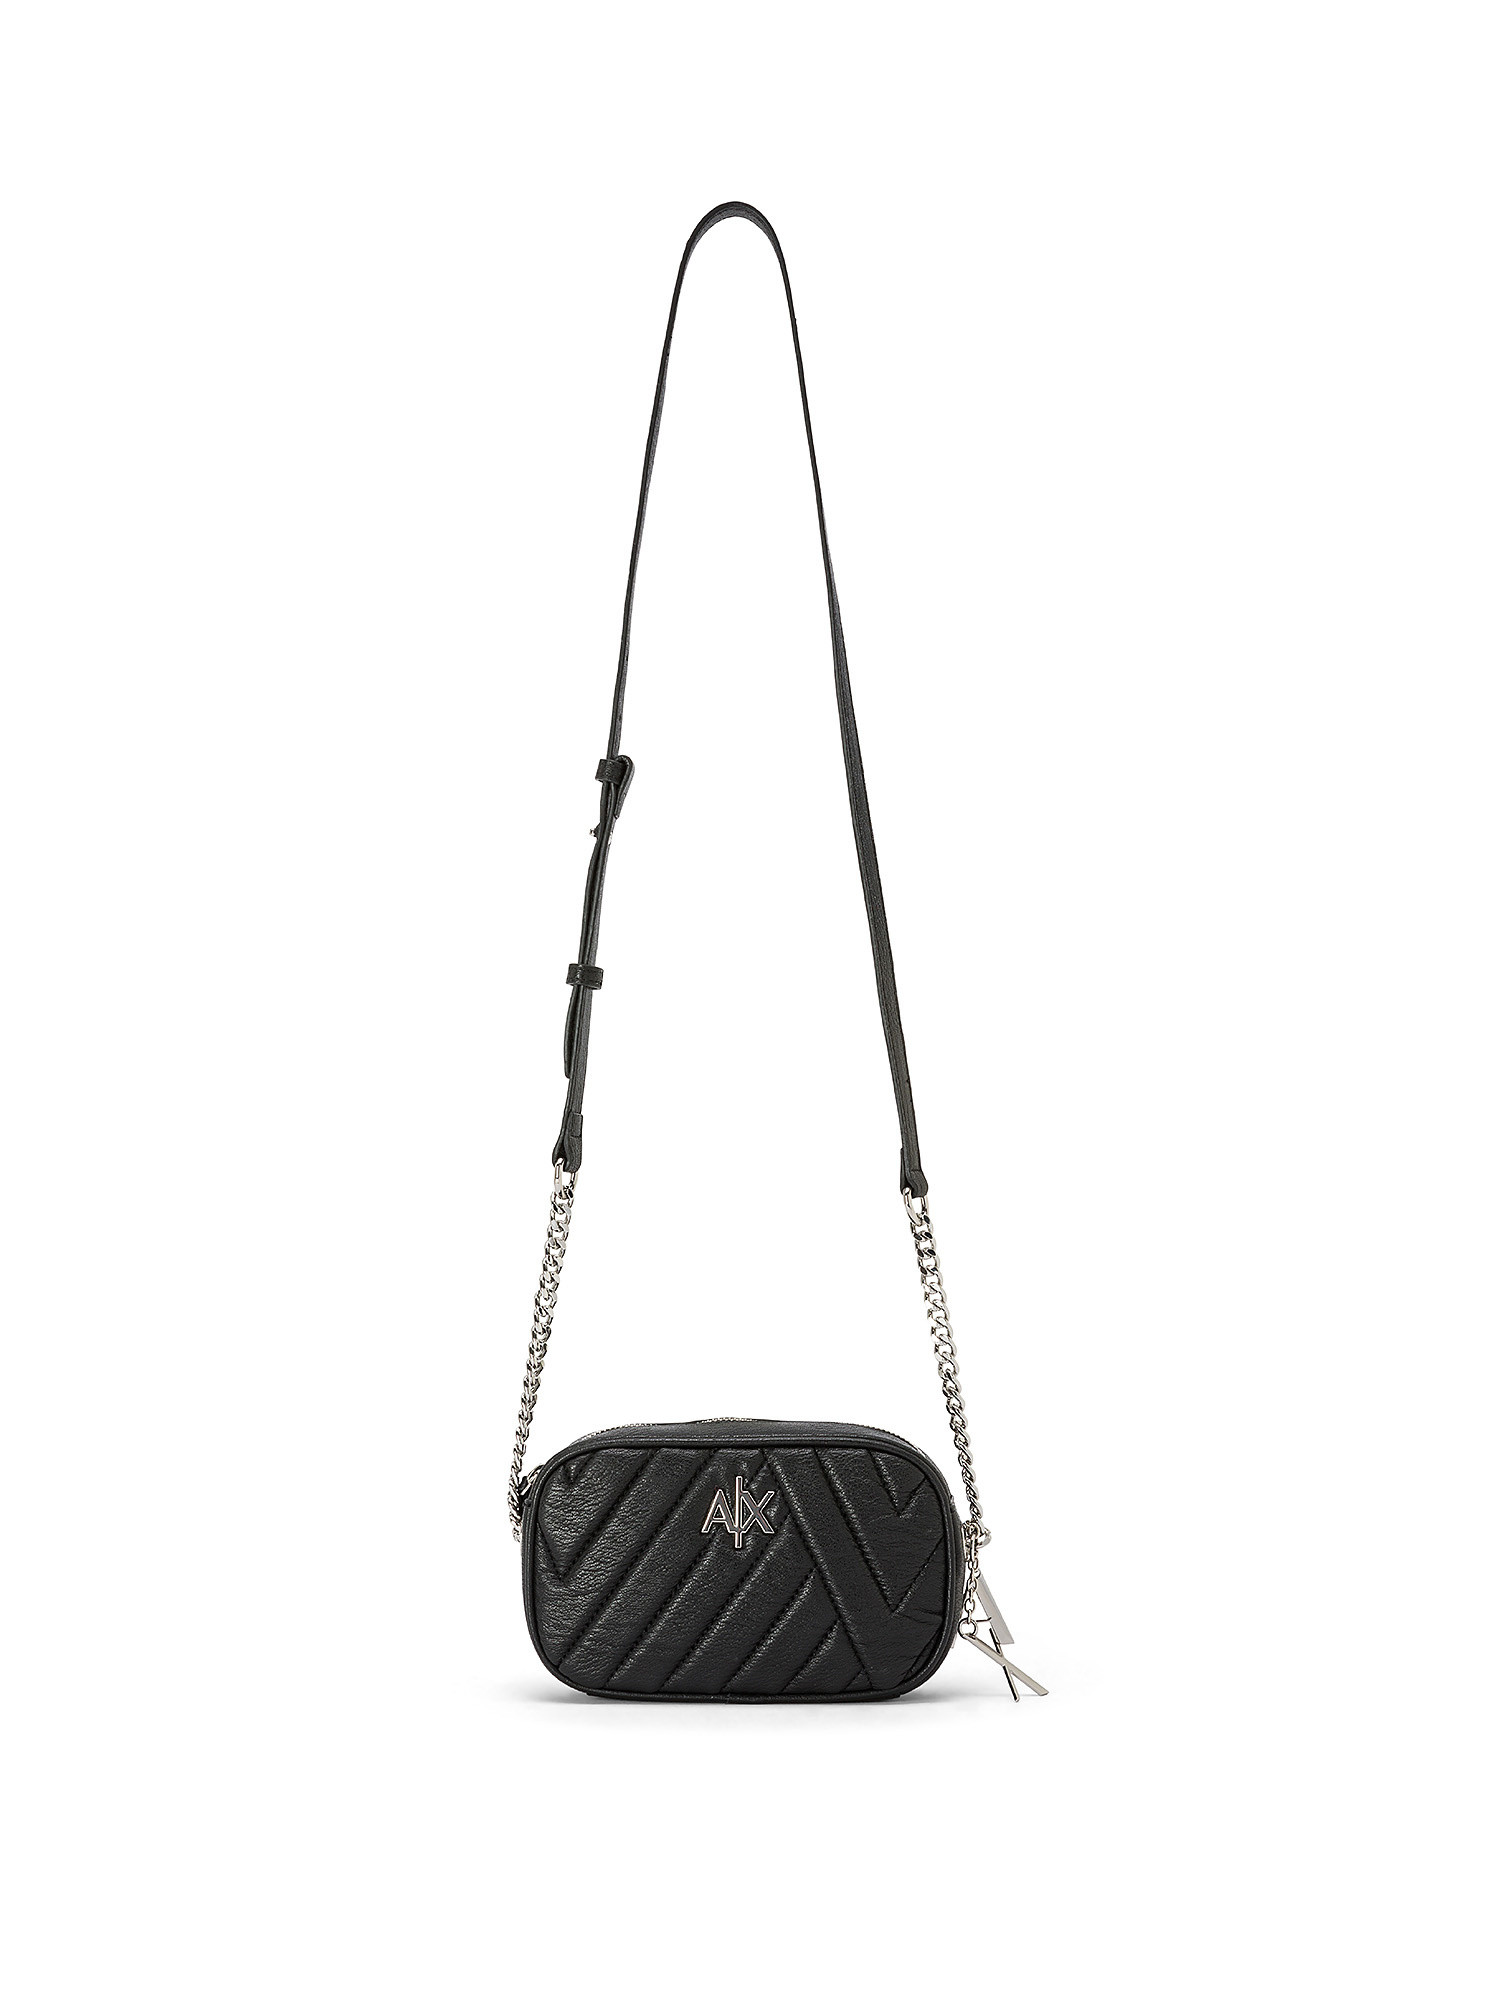 Armani Exchange - Clutch bag with shoulder strap, Black, large image number 0